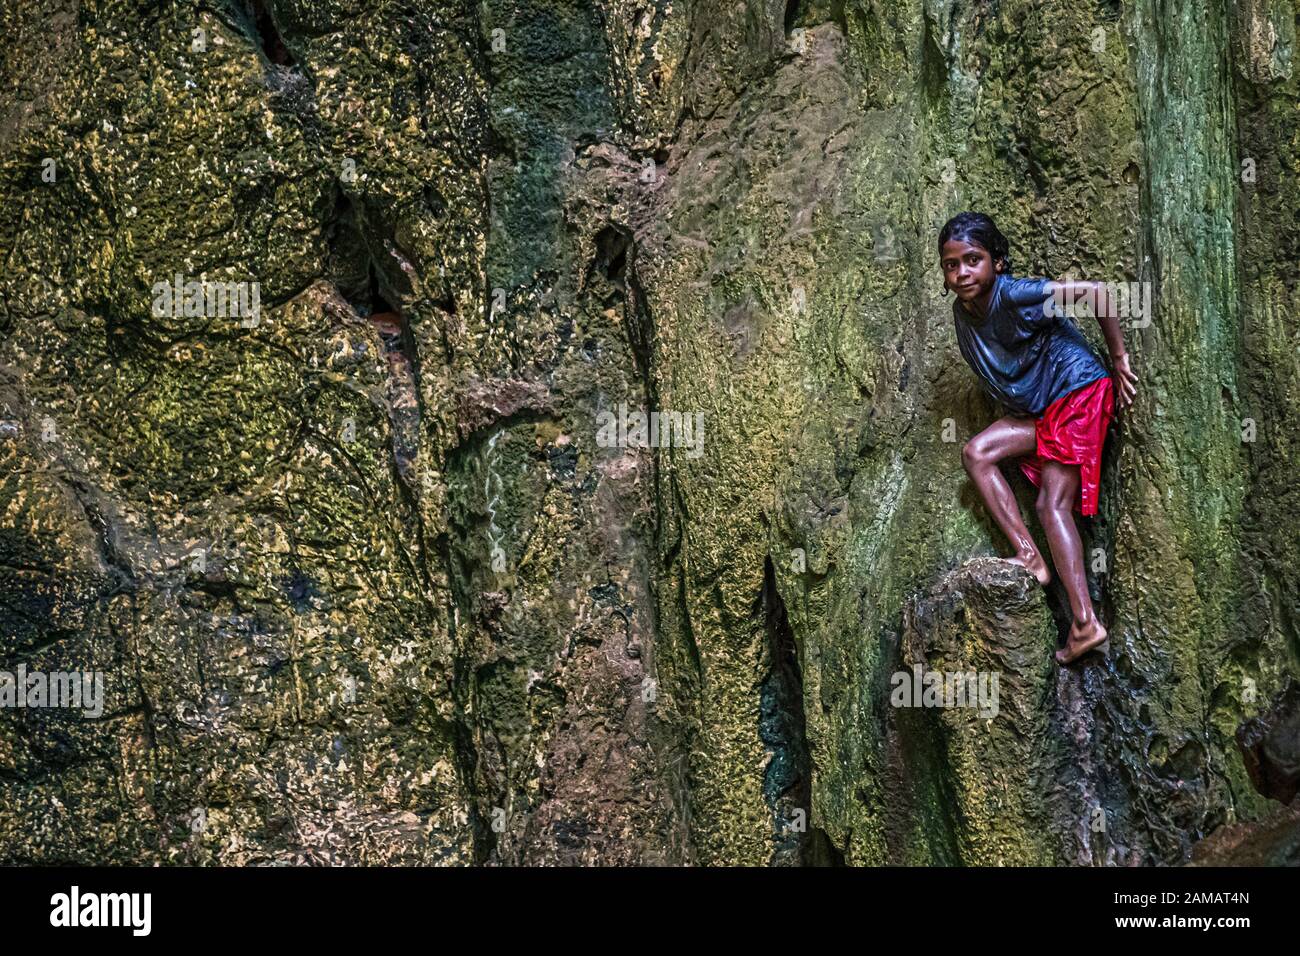 Les enfants de l'île de Panasia aiment les rochers d'une grotte comme tour de plongée naturelle. Île PanAsia, Papouasie-Nouvelle-Guinée Banque D'Images